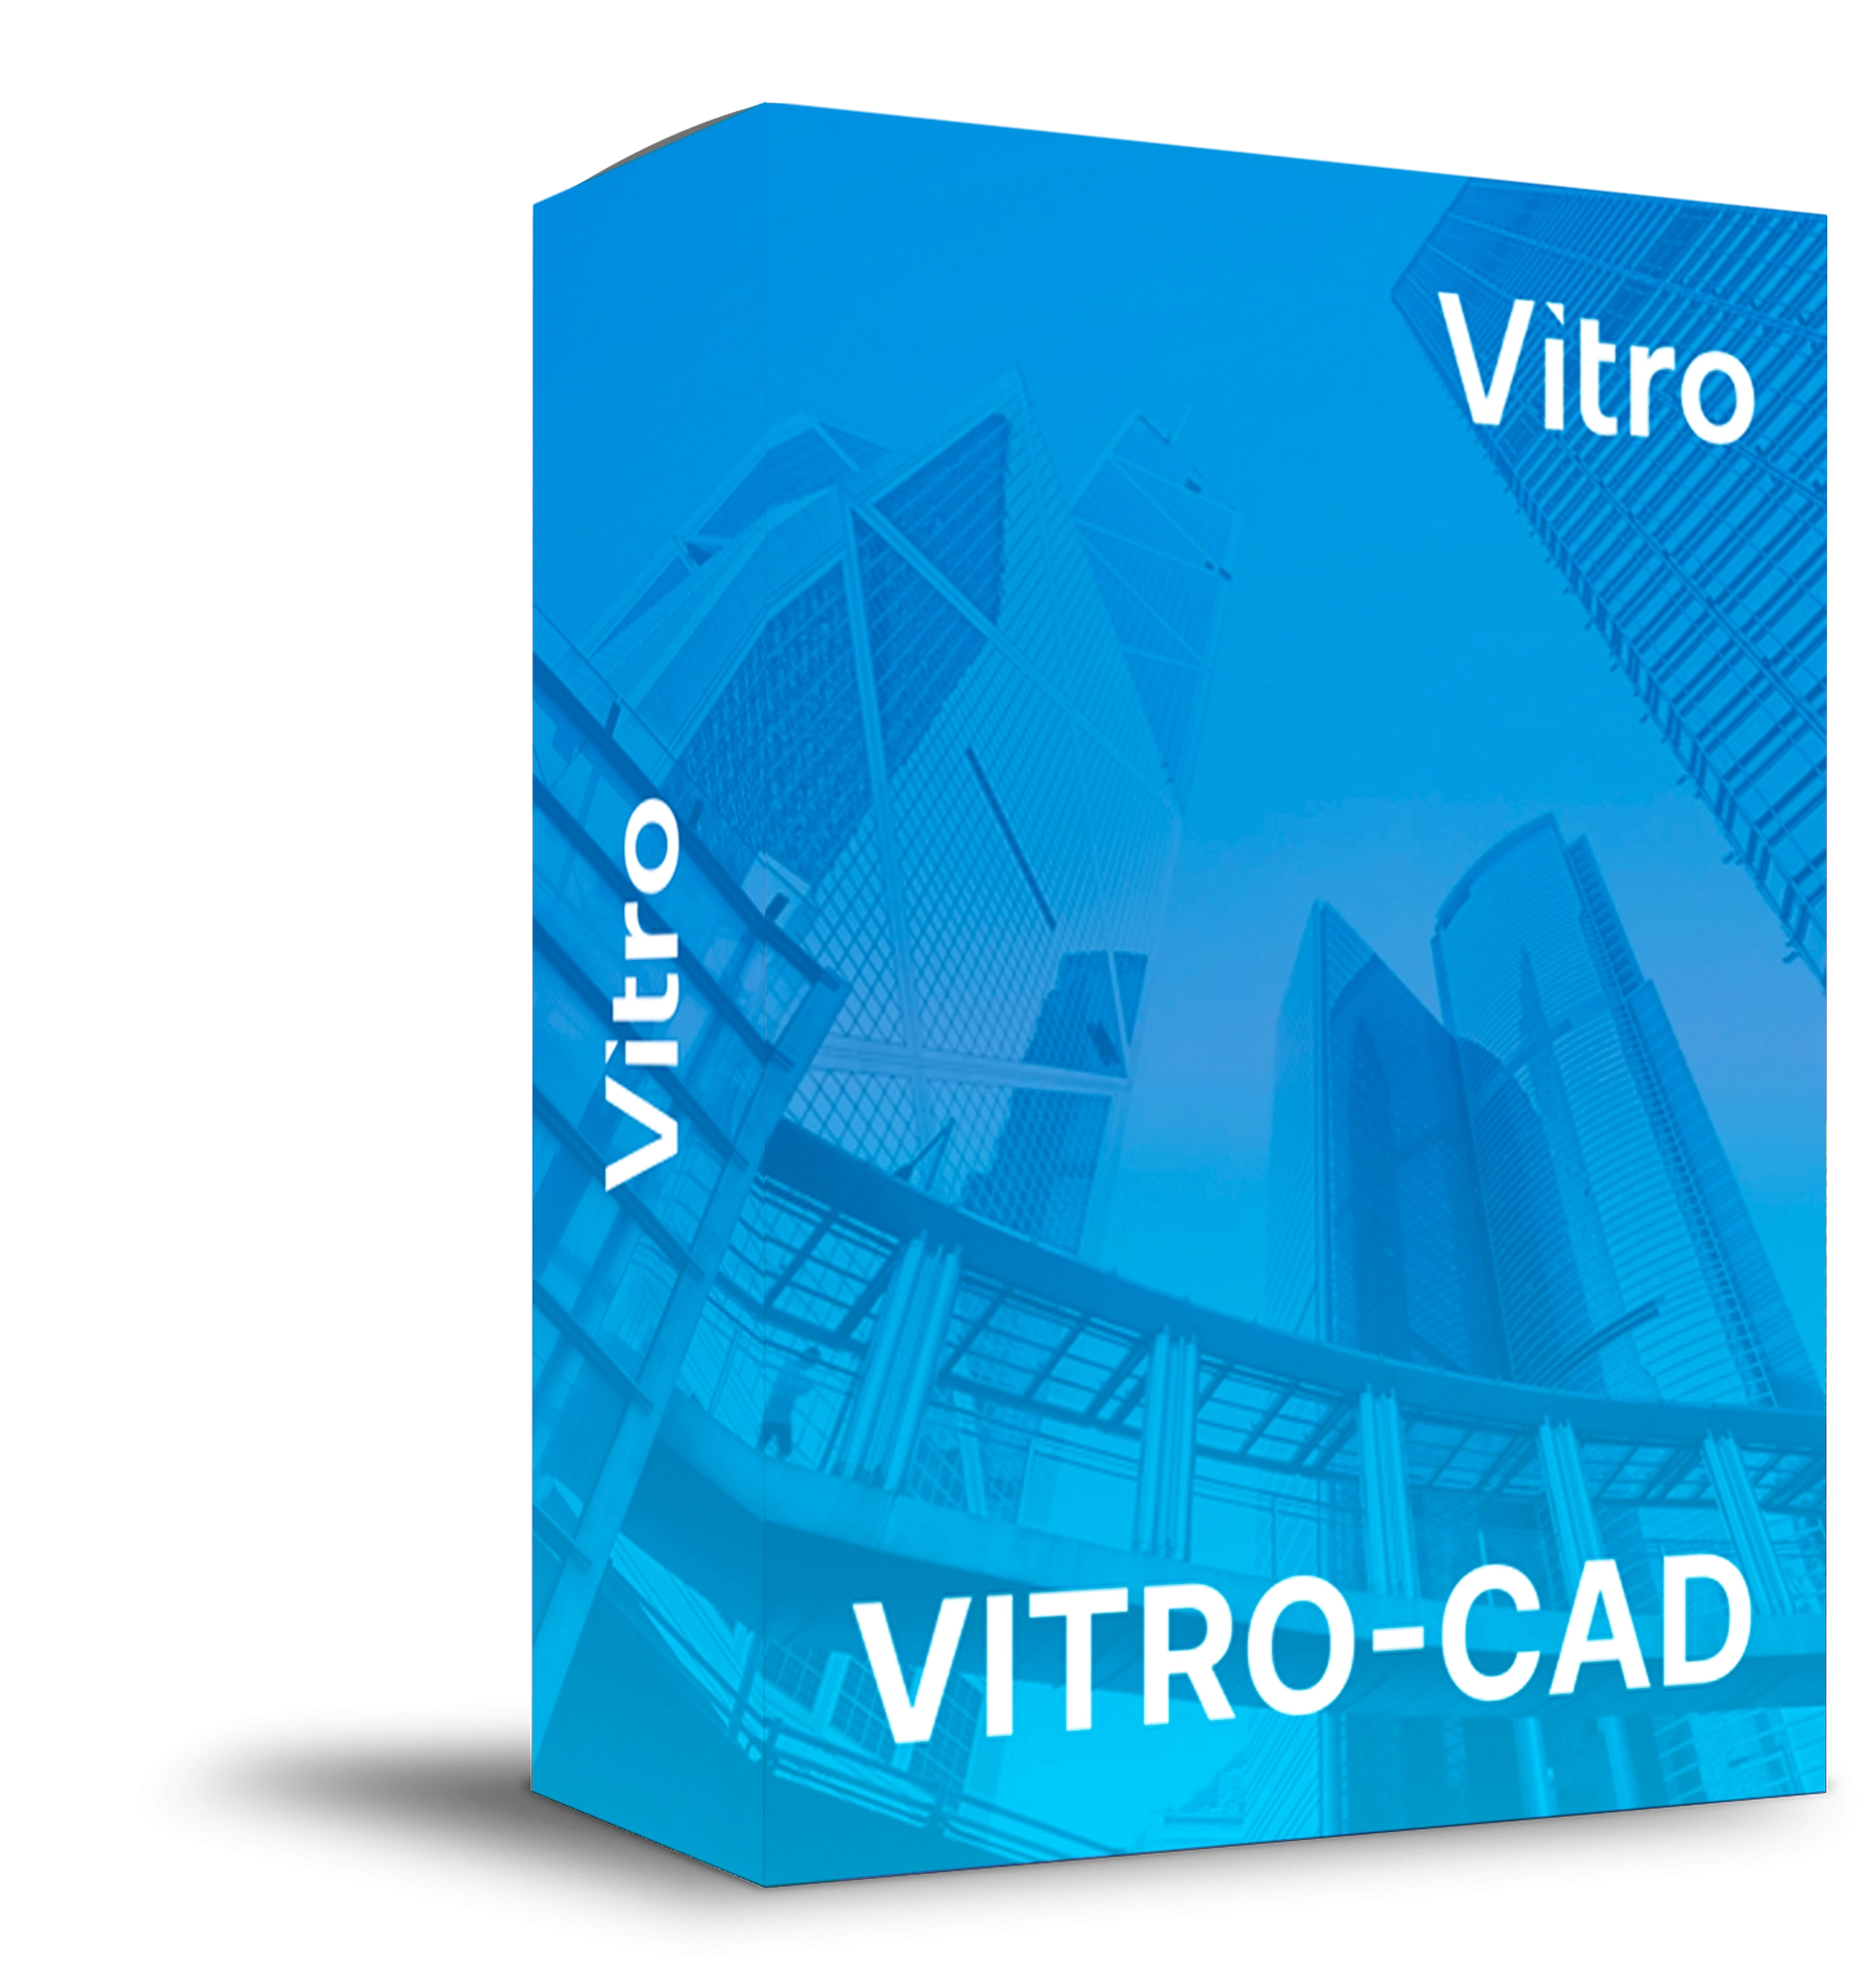 Vitro-CAD